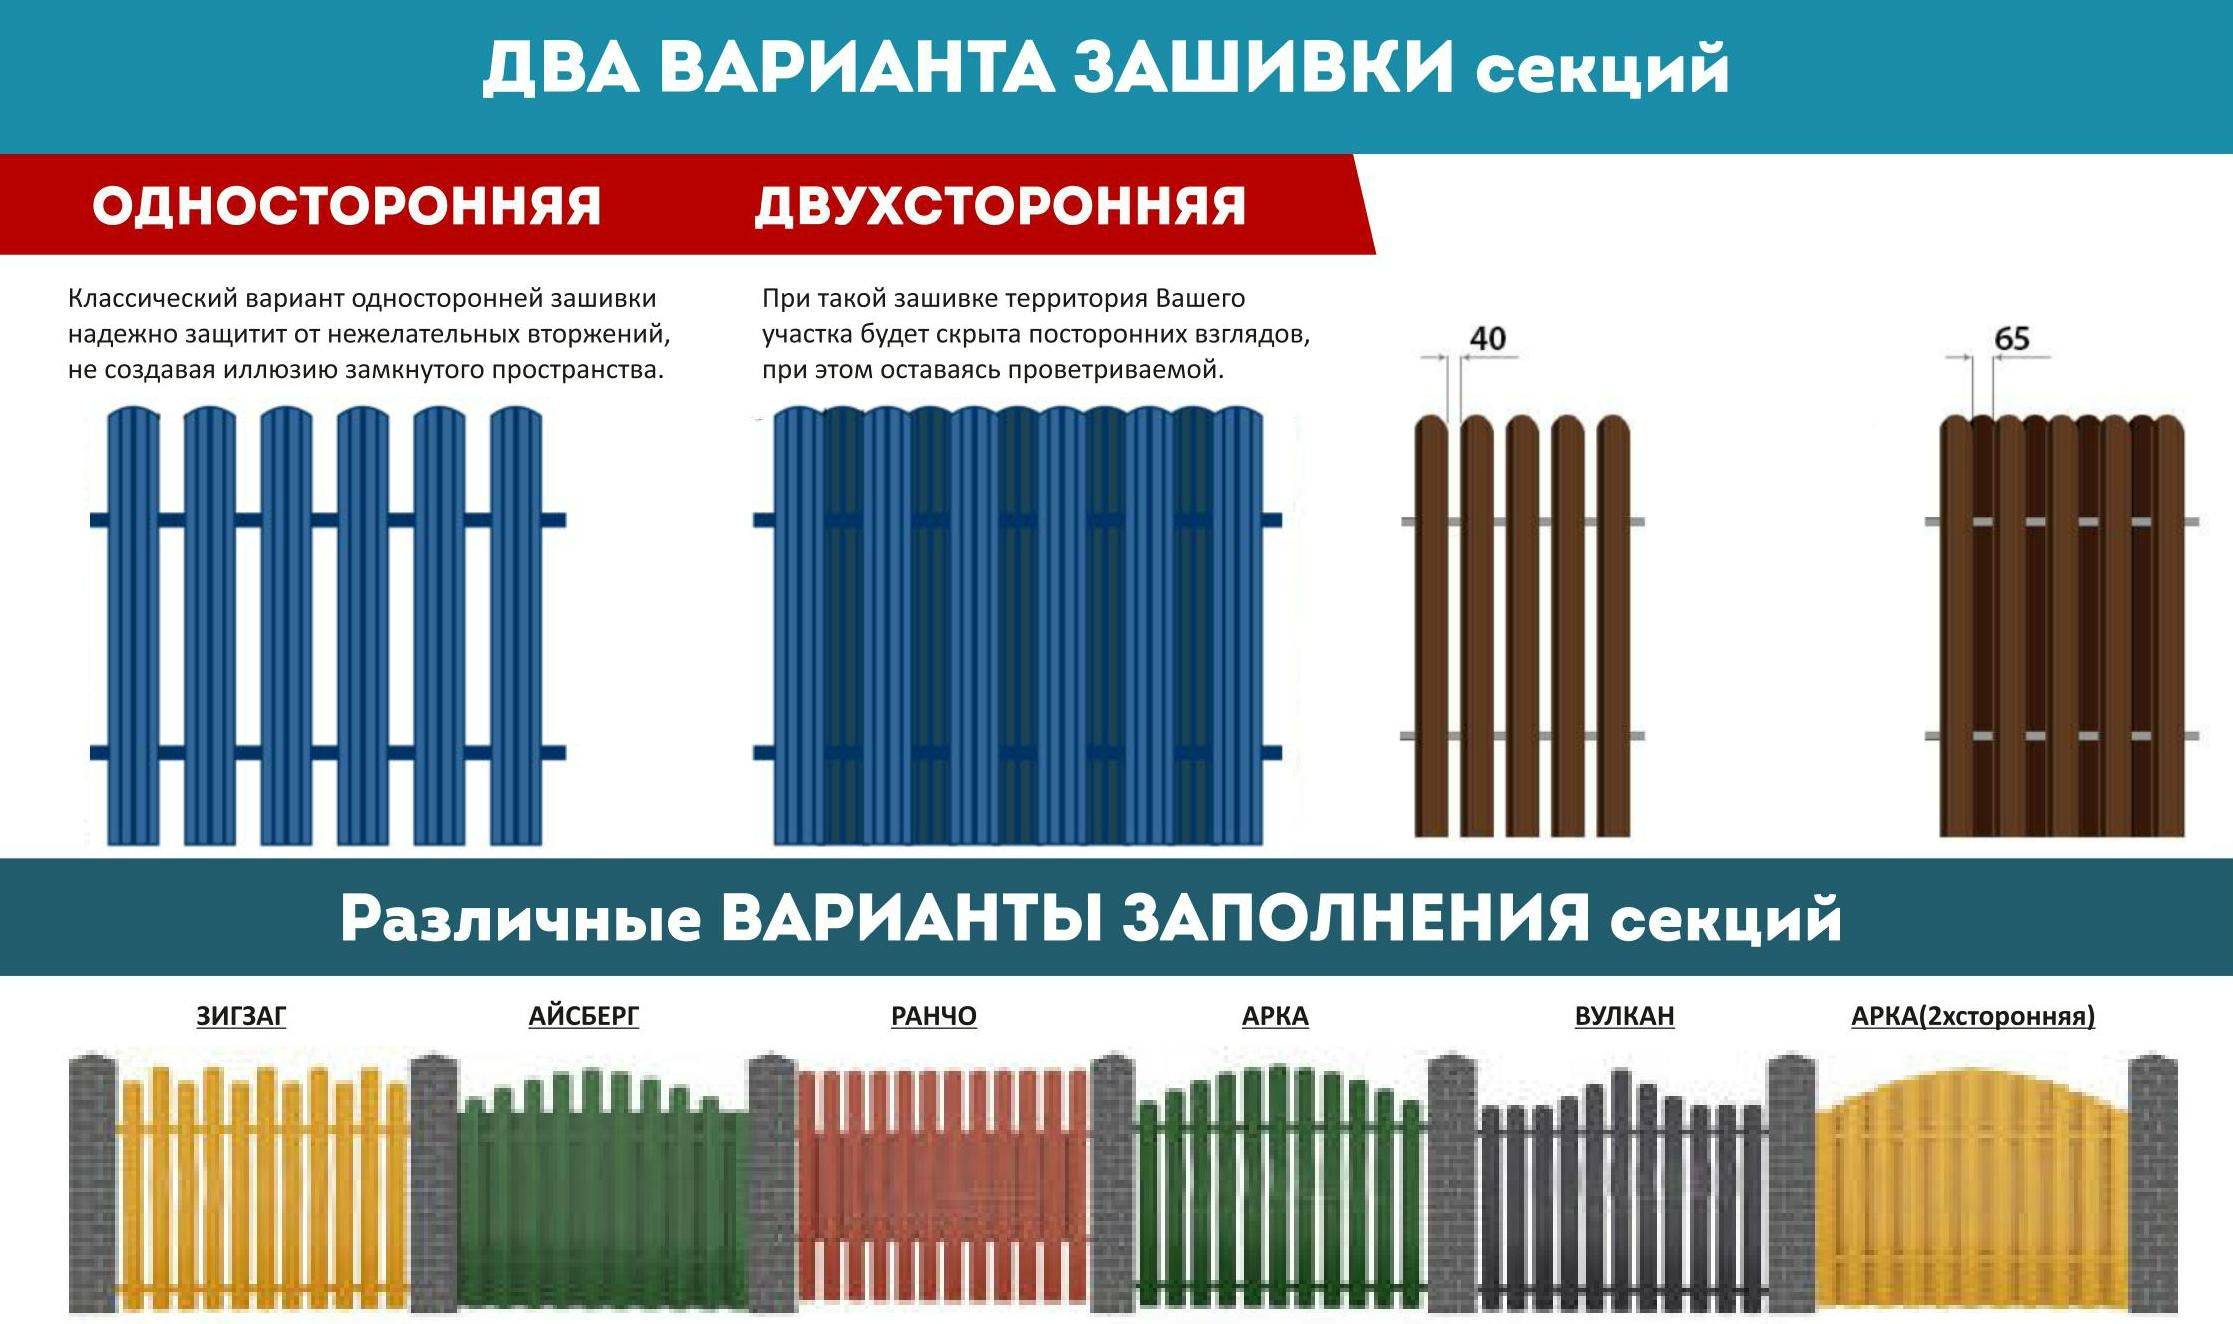 Забор из металлического штакетника (евроштакетника) своими руками | онлайн-журнал о ремонте и дизайне